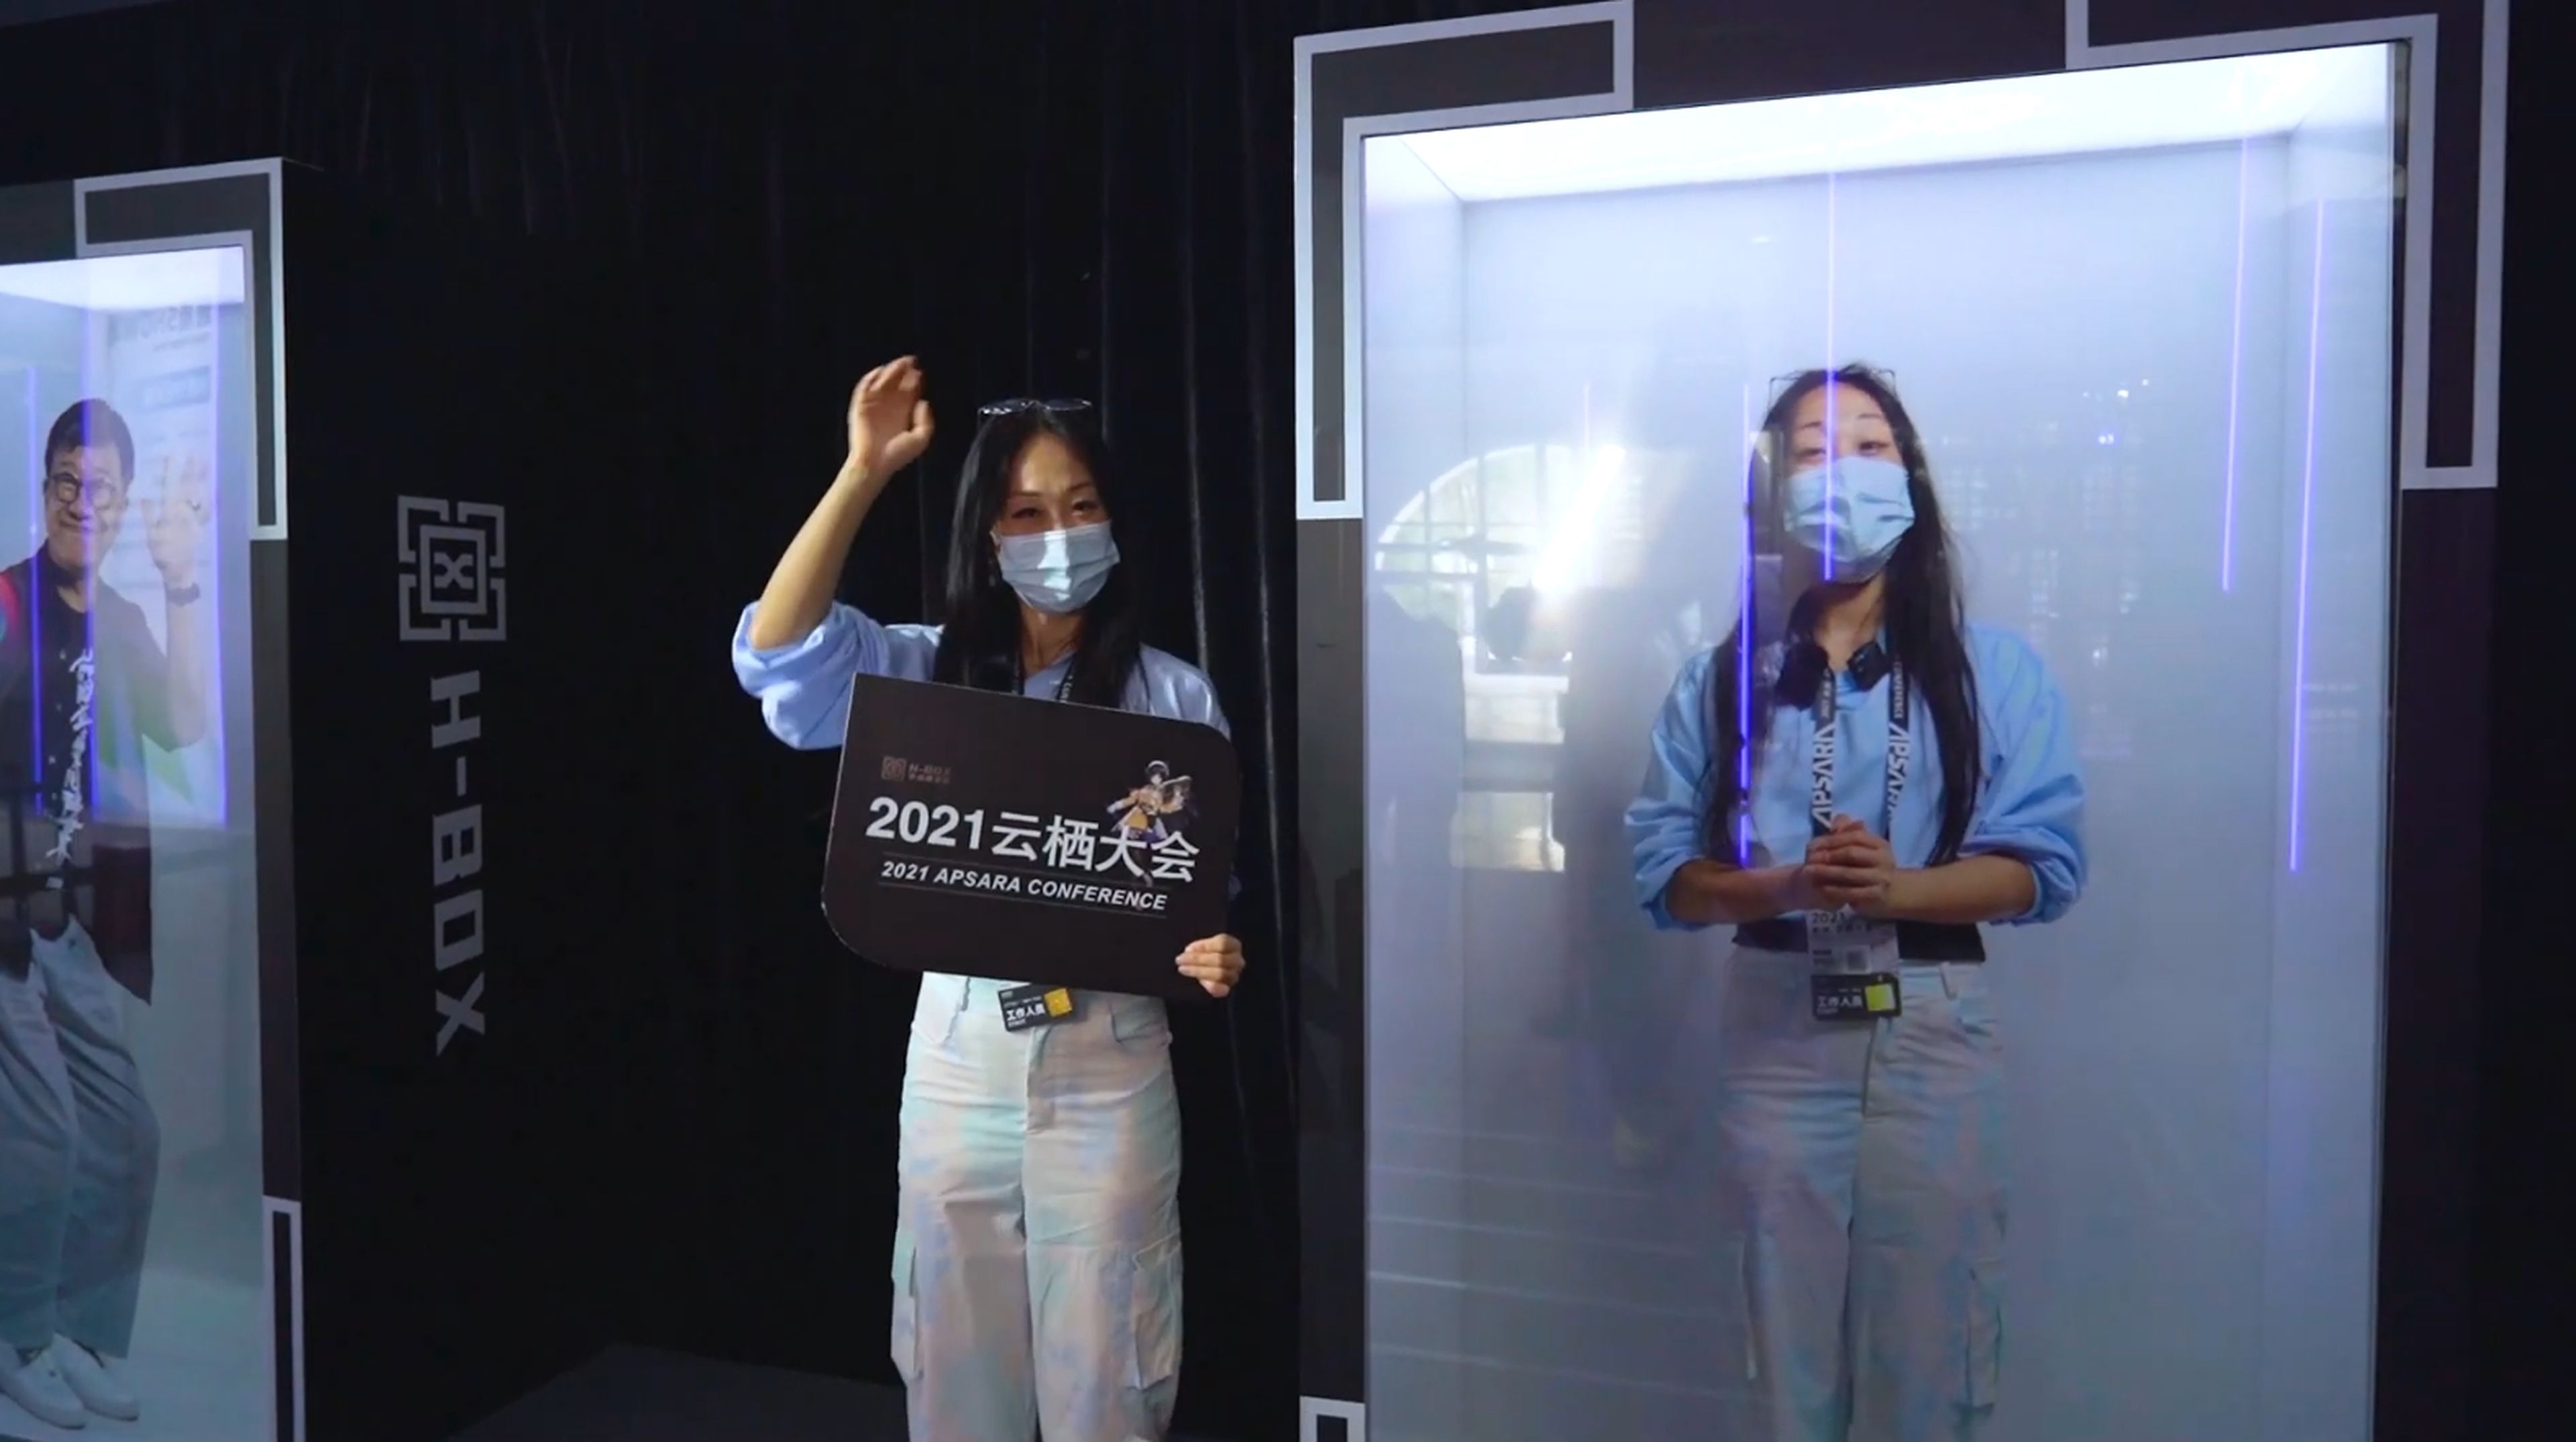 Hologramas, robots, exoesqueletos: Un vistazo a la tecnología del futuro de AliExpress